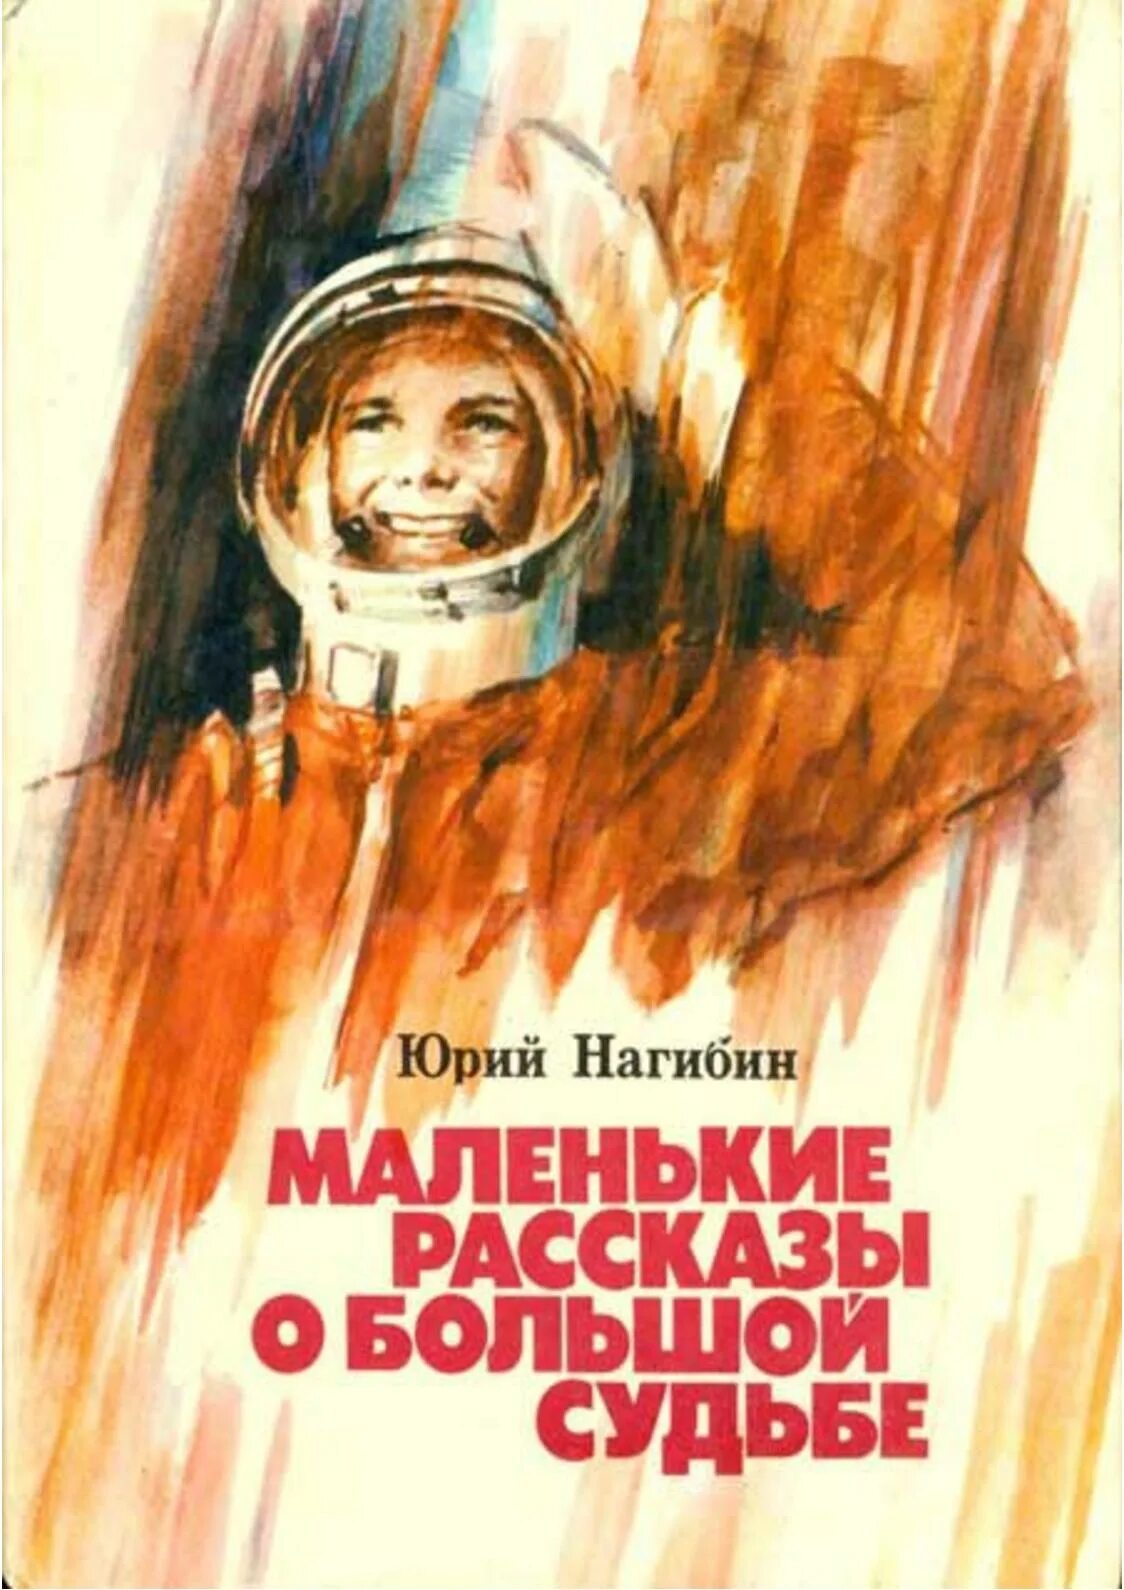 Обухов как мальчик стал космонавтом. Иллюстрации к книге Юрия Нагибина рассказы о Гагарине. Книга о детстве Гагарина.